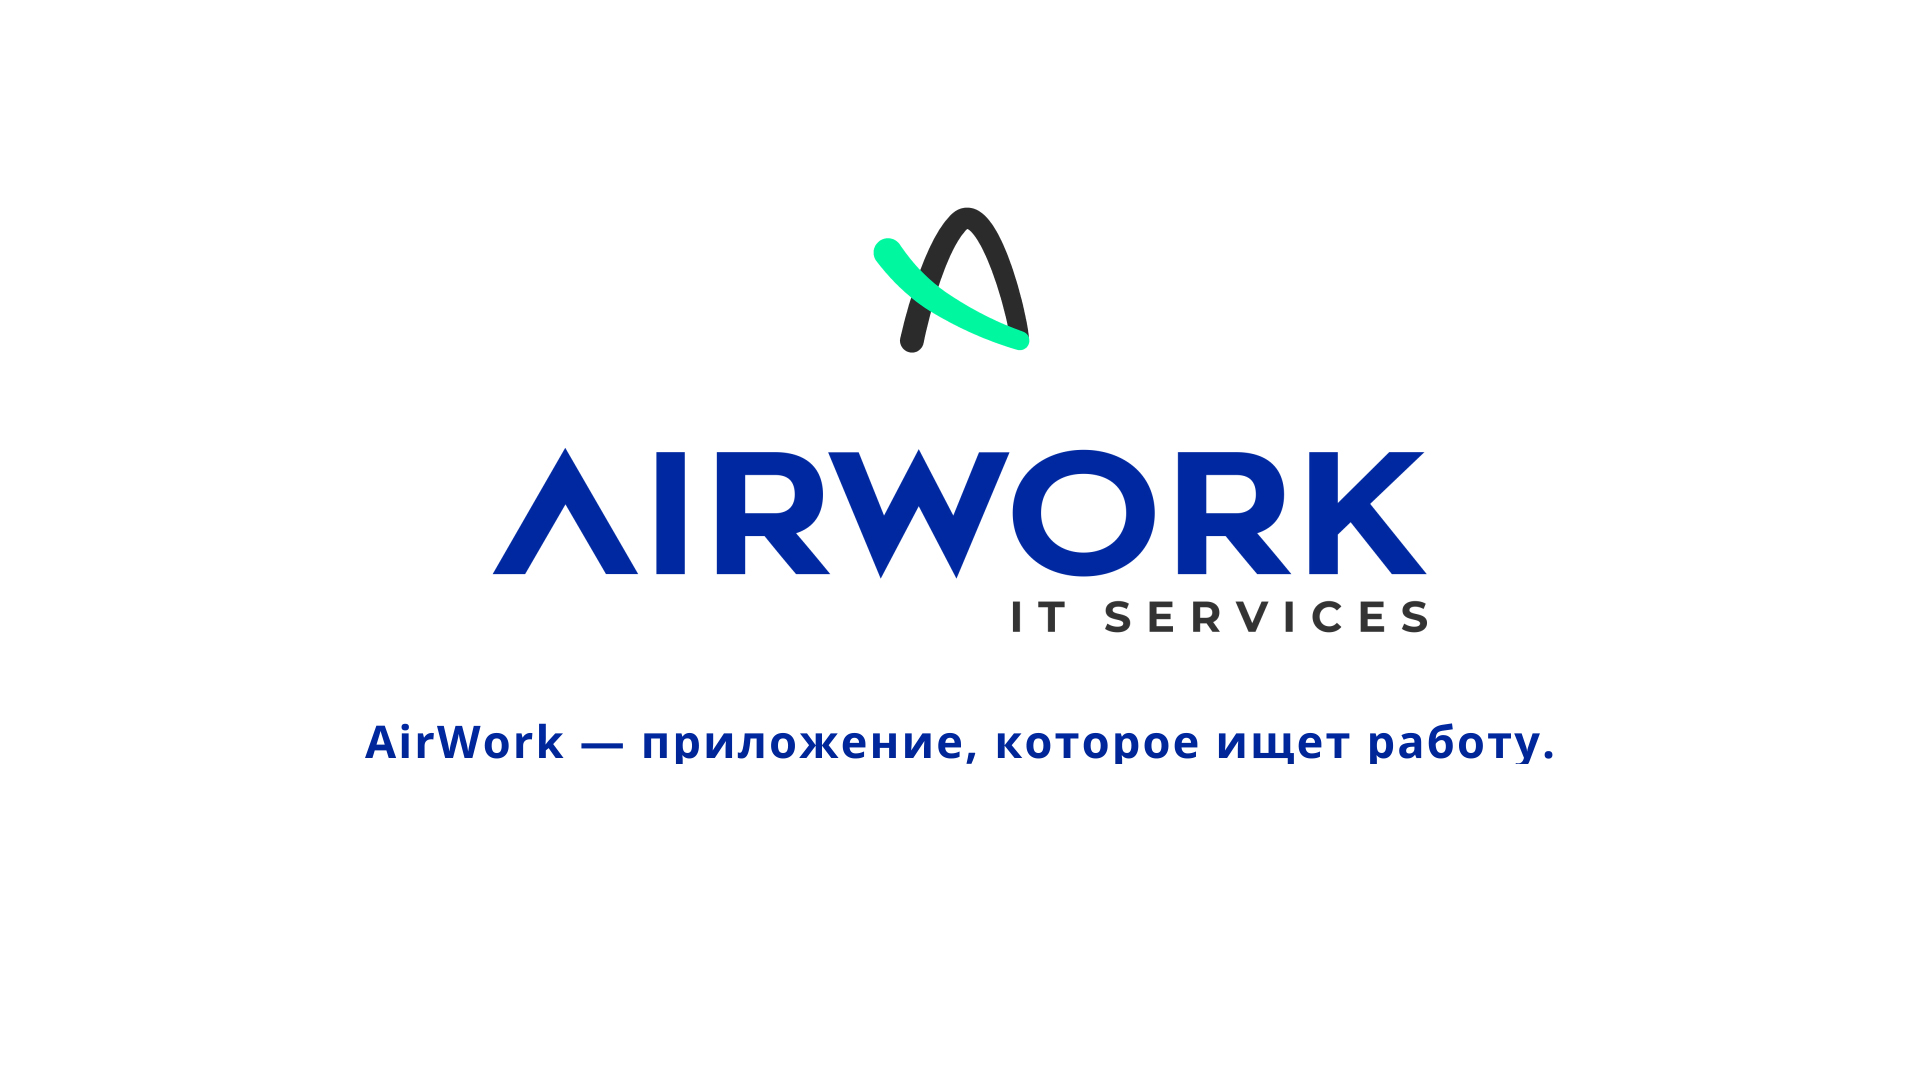 Жителям Брянской области представили новый сервис по поиску работы «AirWork»